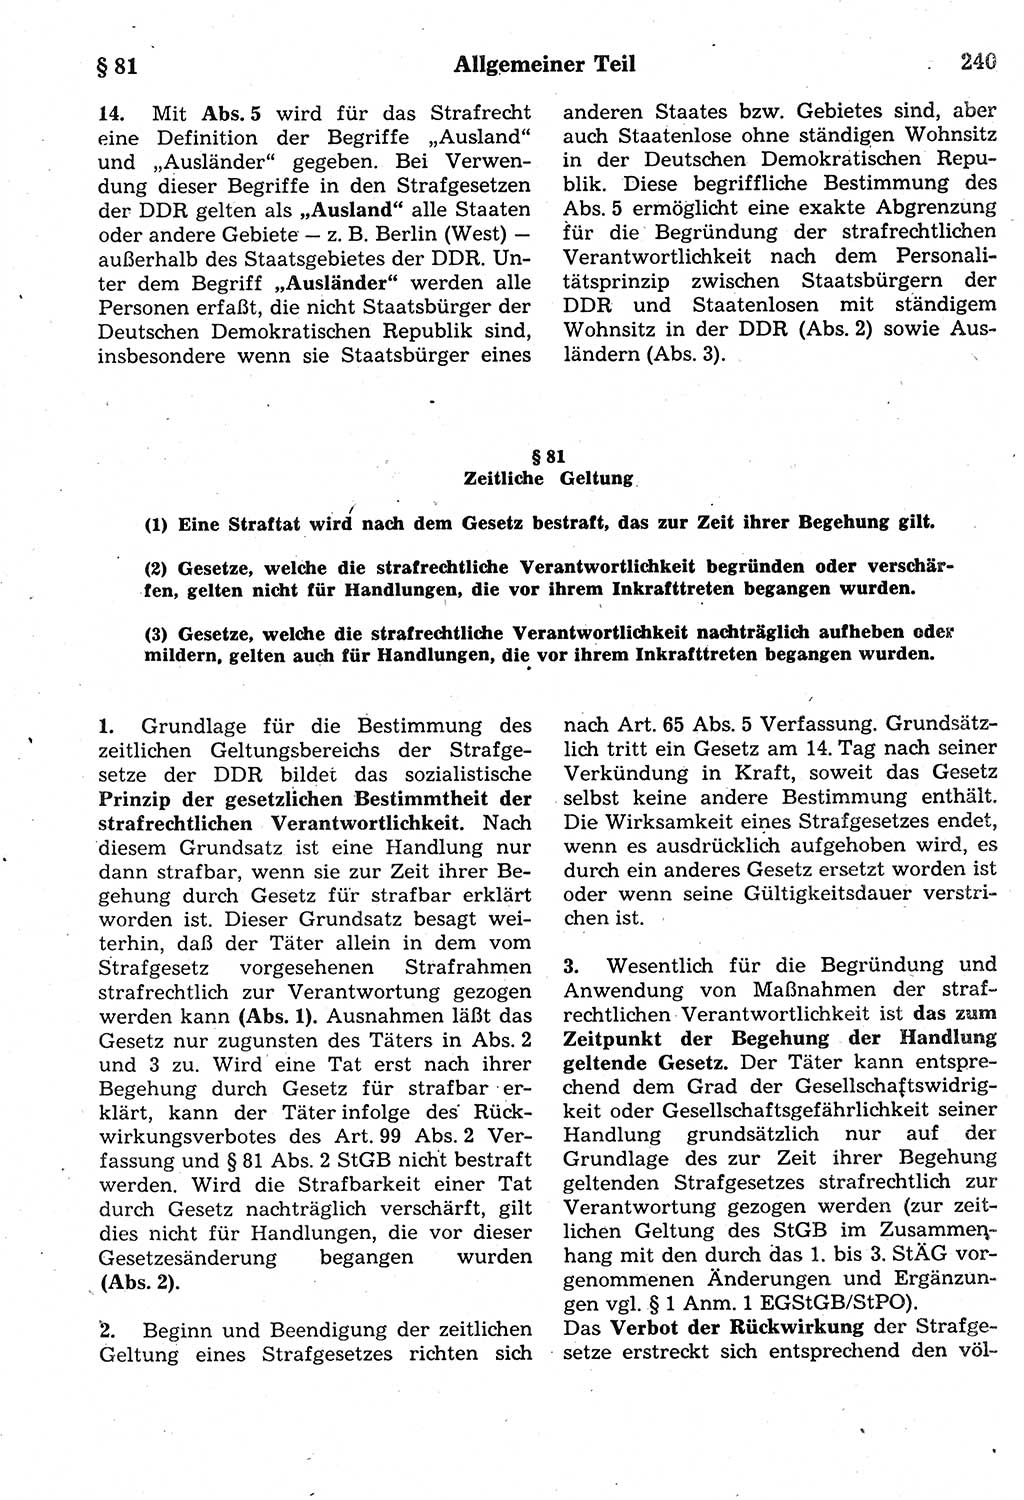 Strafrecht der Deutschen Demokratischen Republik (DDR), Kommentar zum Strafgesetzbuch (StGB) 1987, Seite 240 (Strafr. DDR Komm. StGB 1987, S. 240)